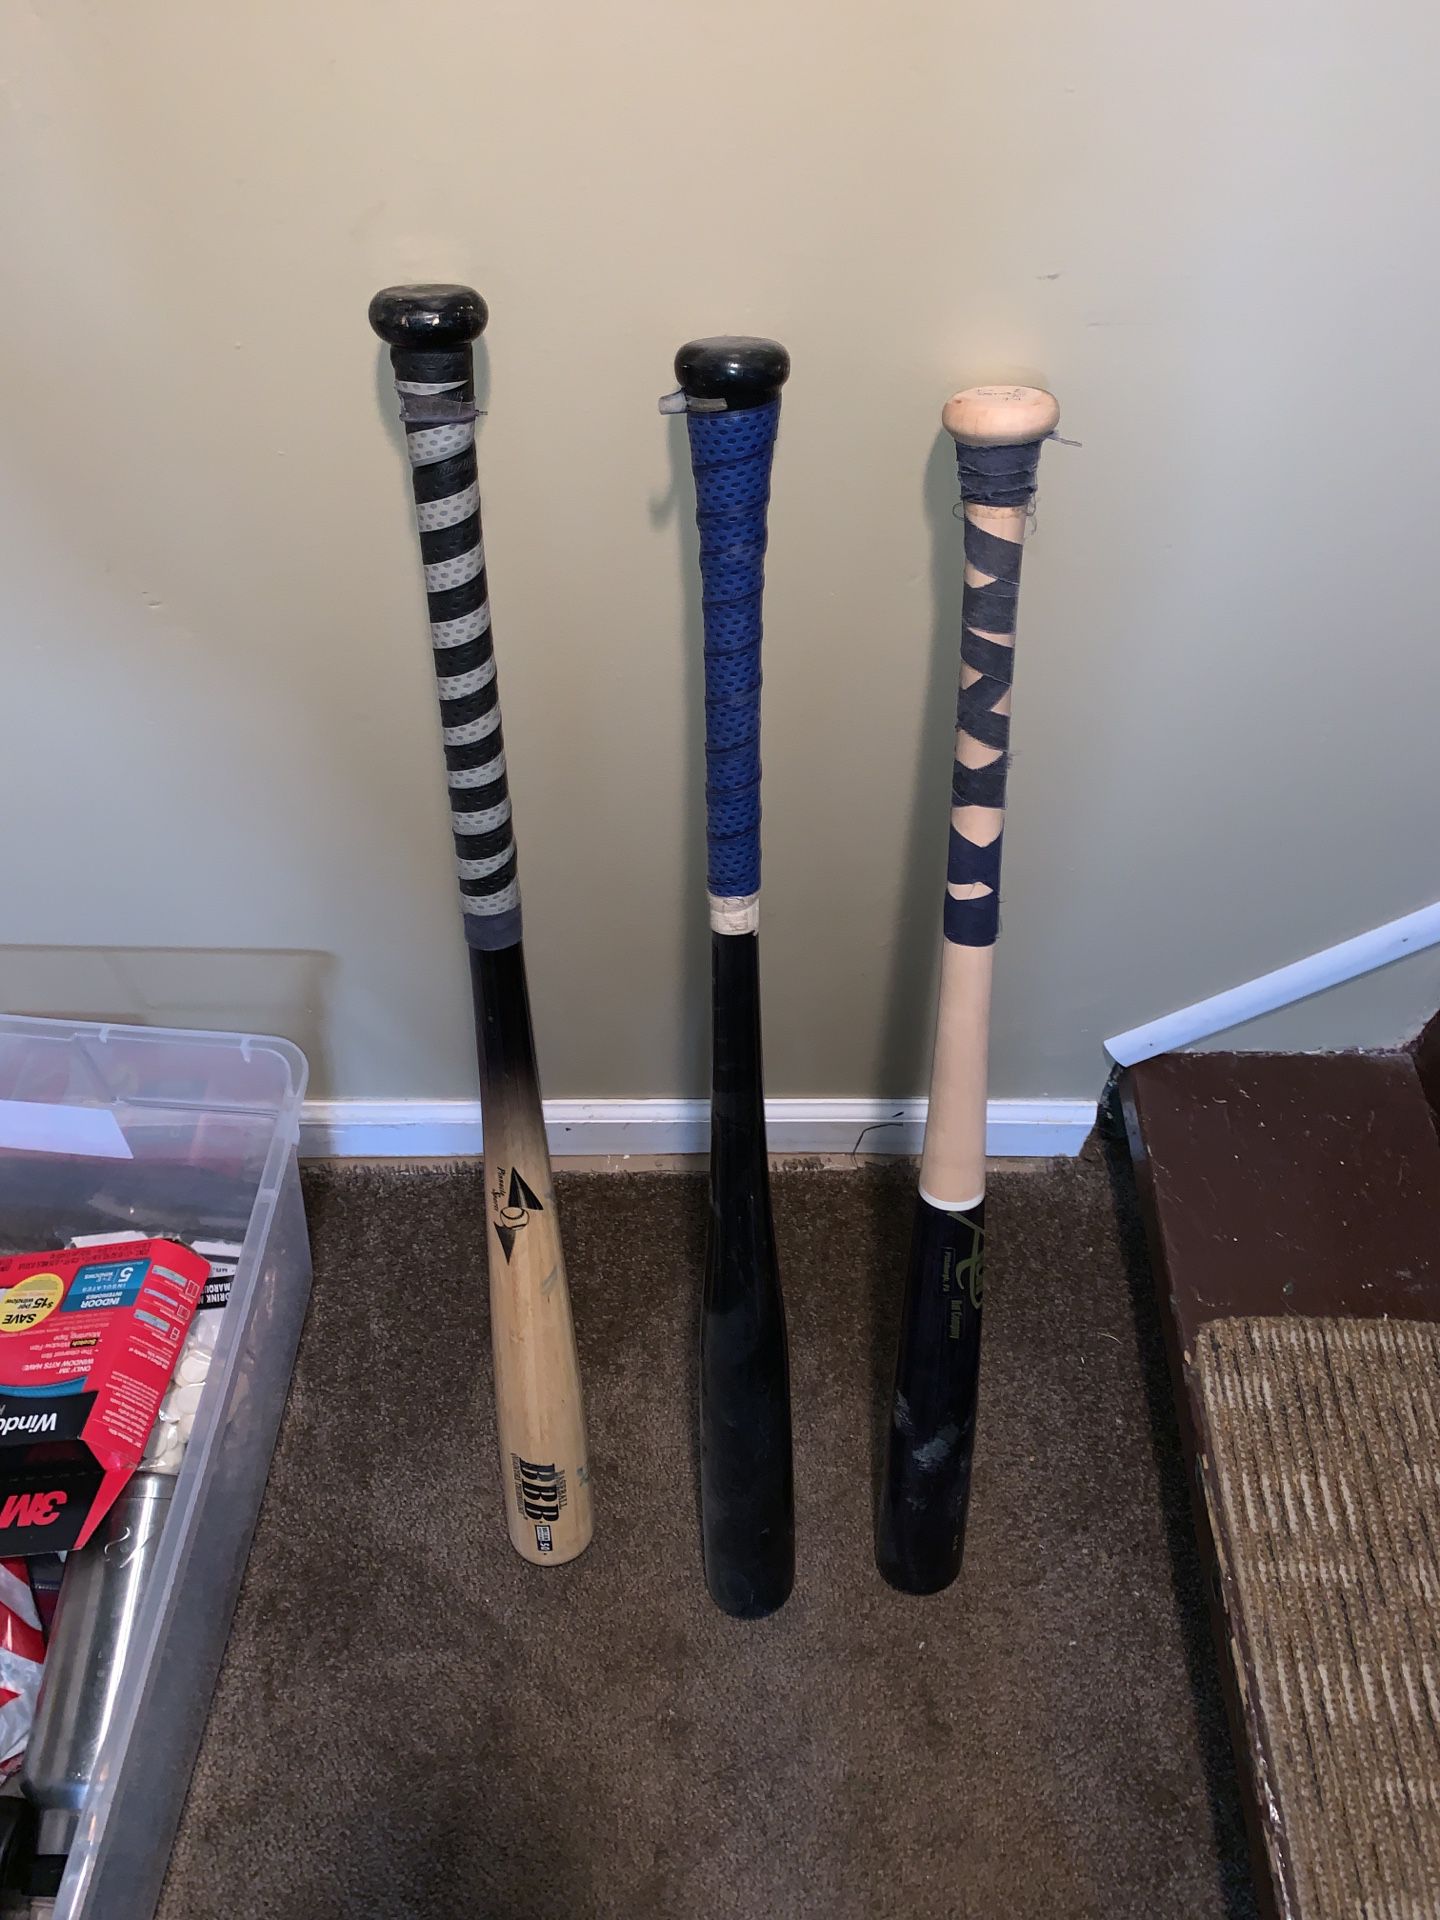 Wooden baseball bats